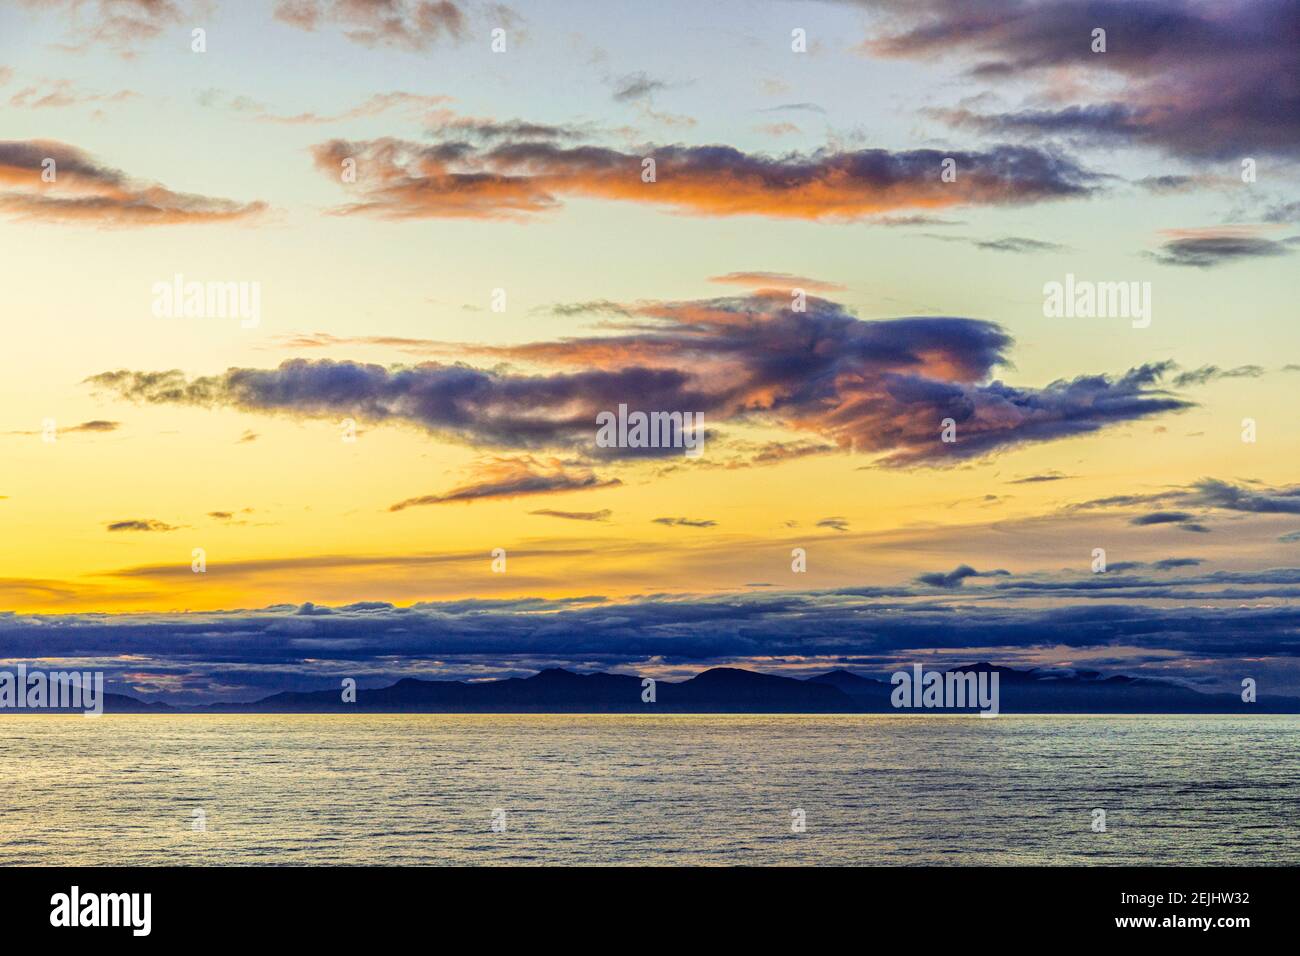 Strana forma di una figura volante o di un angelo in un tramonto sulla costa nord-occidentale del Pacifico vicino a Prince of Wales Island, Alaska, USA - visto da una nave da crociera. Foto Stock